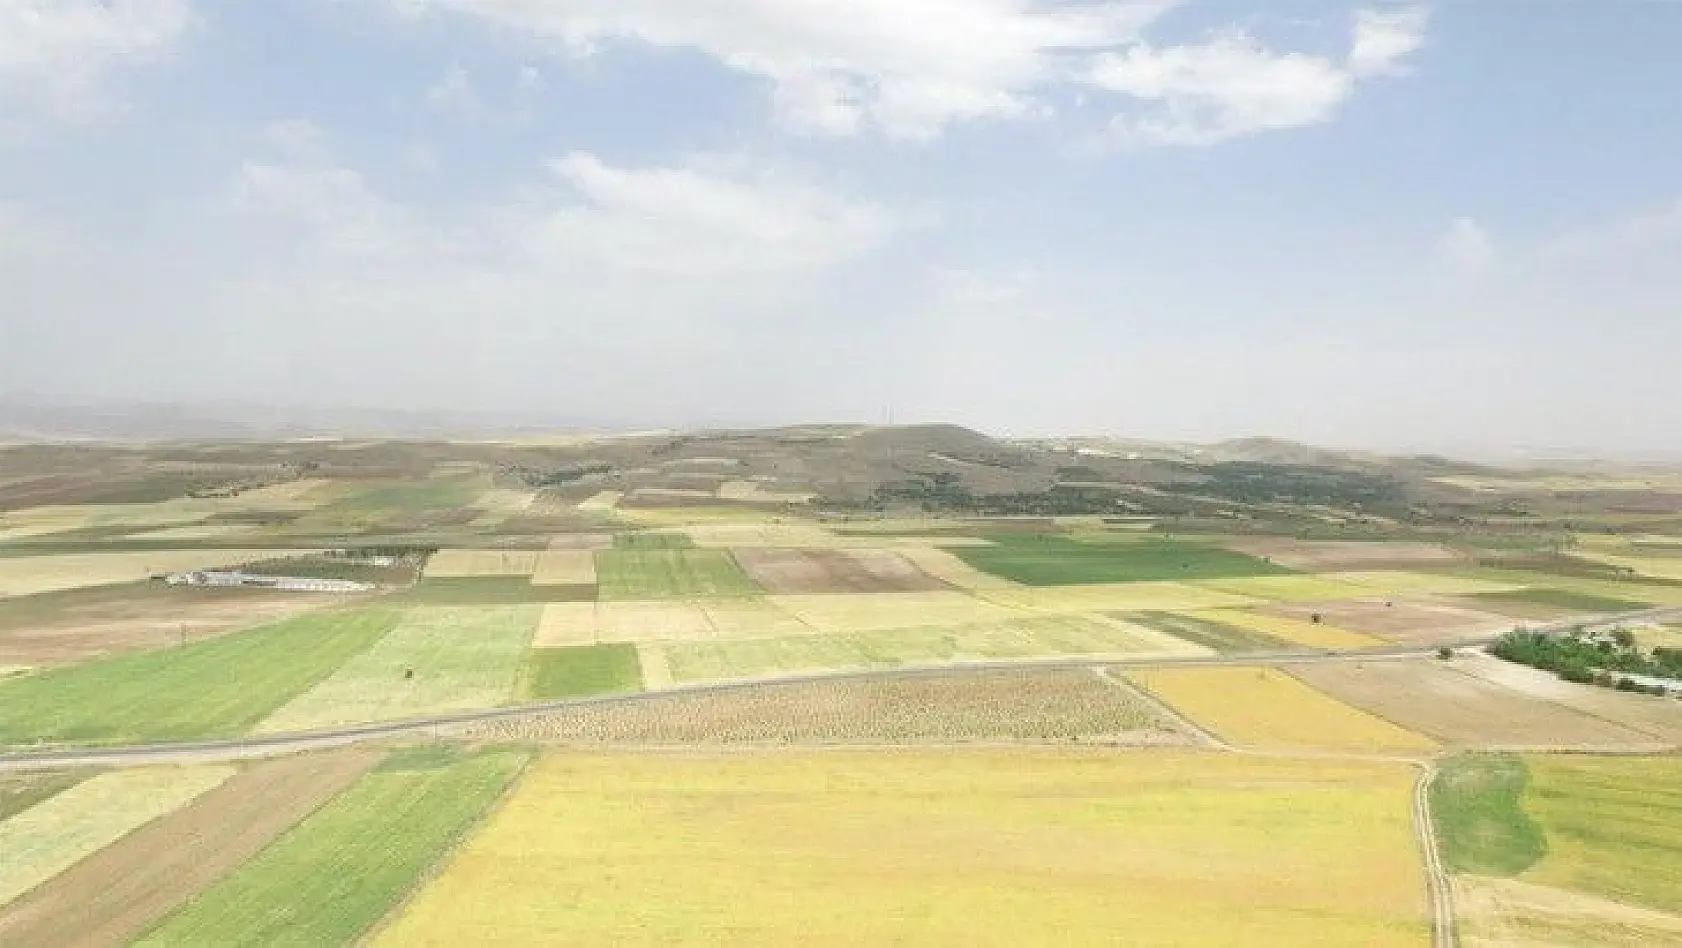 DSİ Genel Müdürü Yıldız, 'Elazığ'da 185 bin 900 dekar tarım arazisi sulanacak'